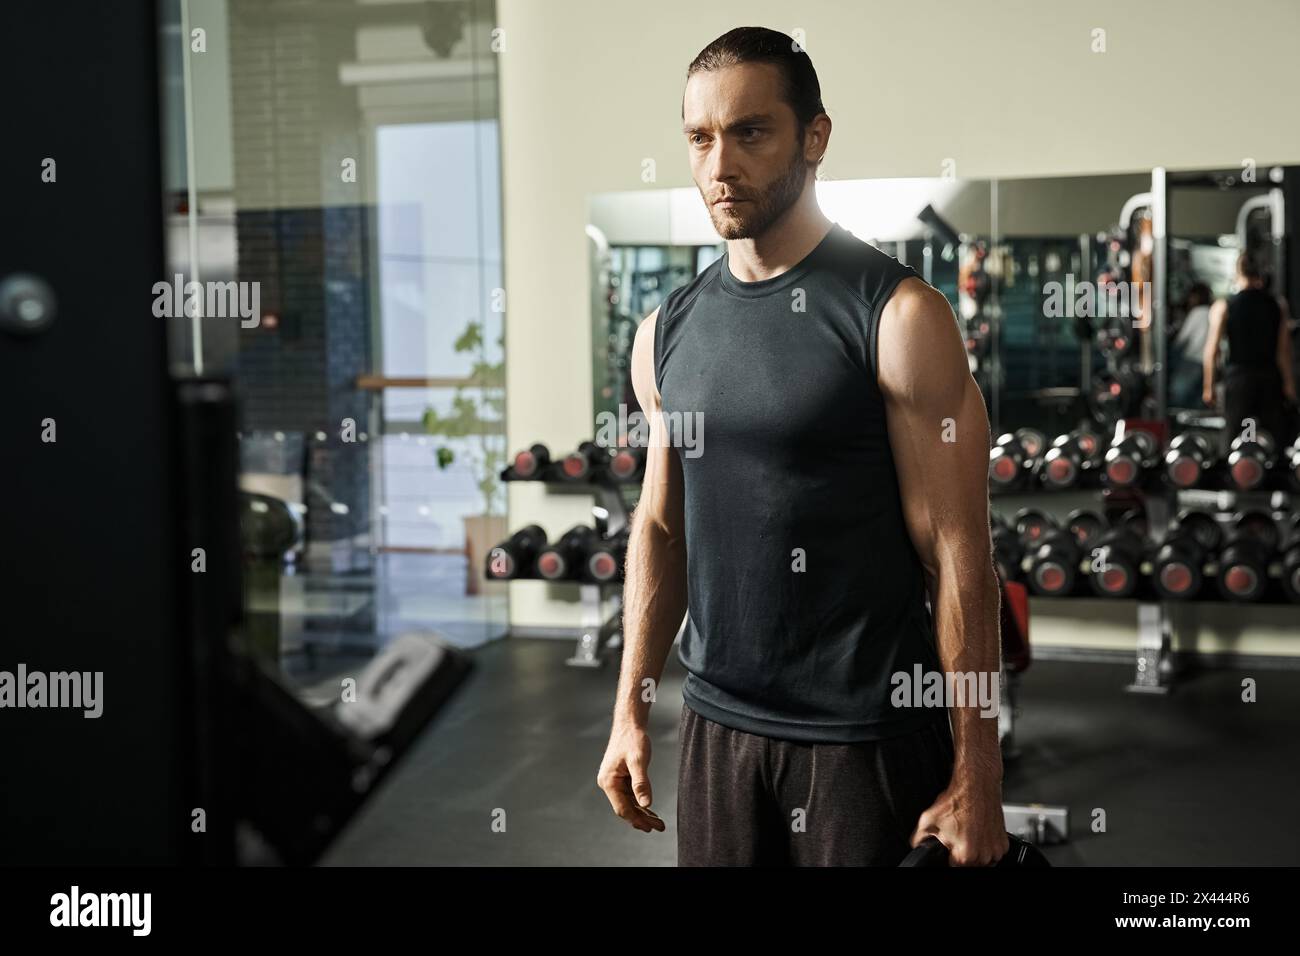 Un homme en tenue sportive se tient debout dans une salle de gym, tenant des plaques noires Banque D'Images